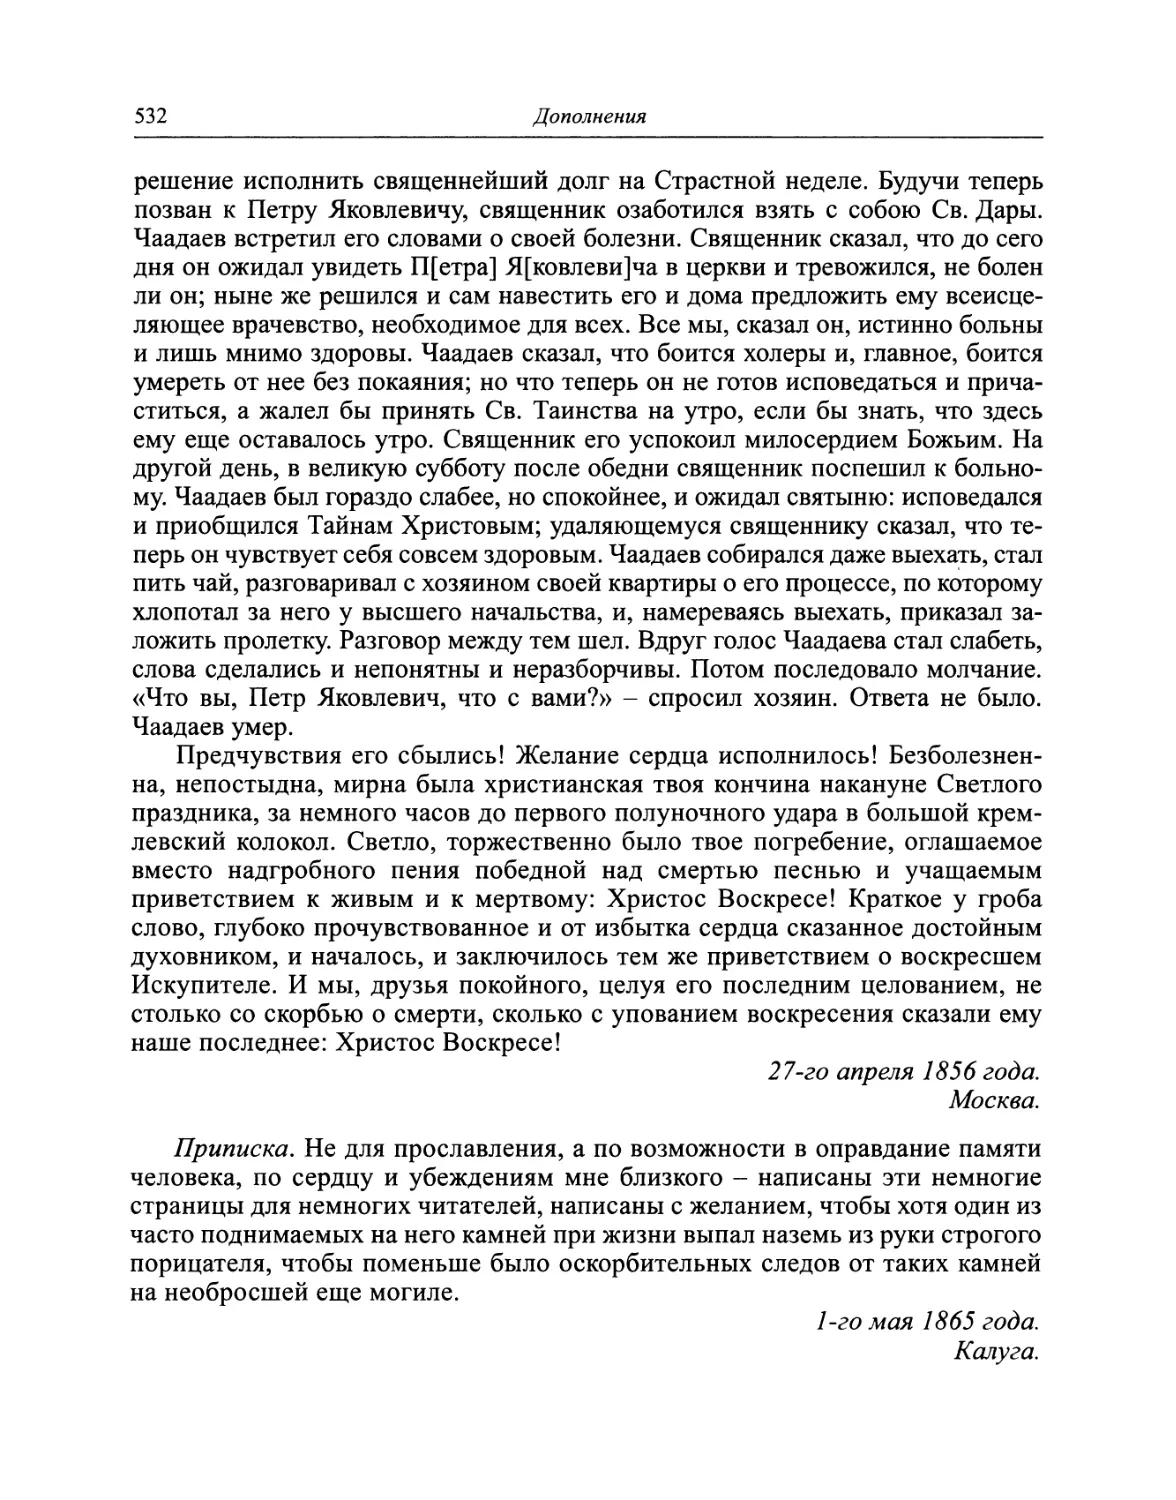 Заметка об отношении Императора Александра Павловича к католичеству